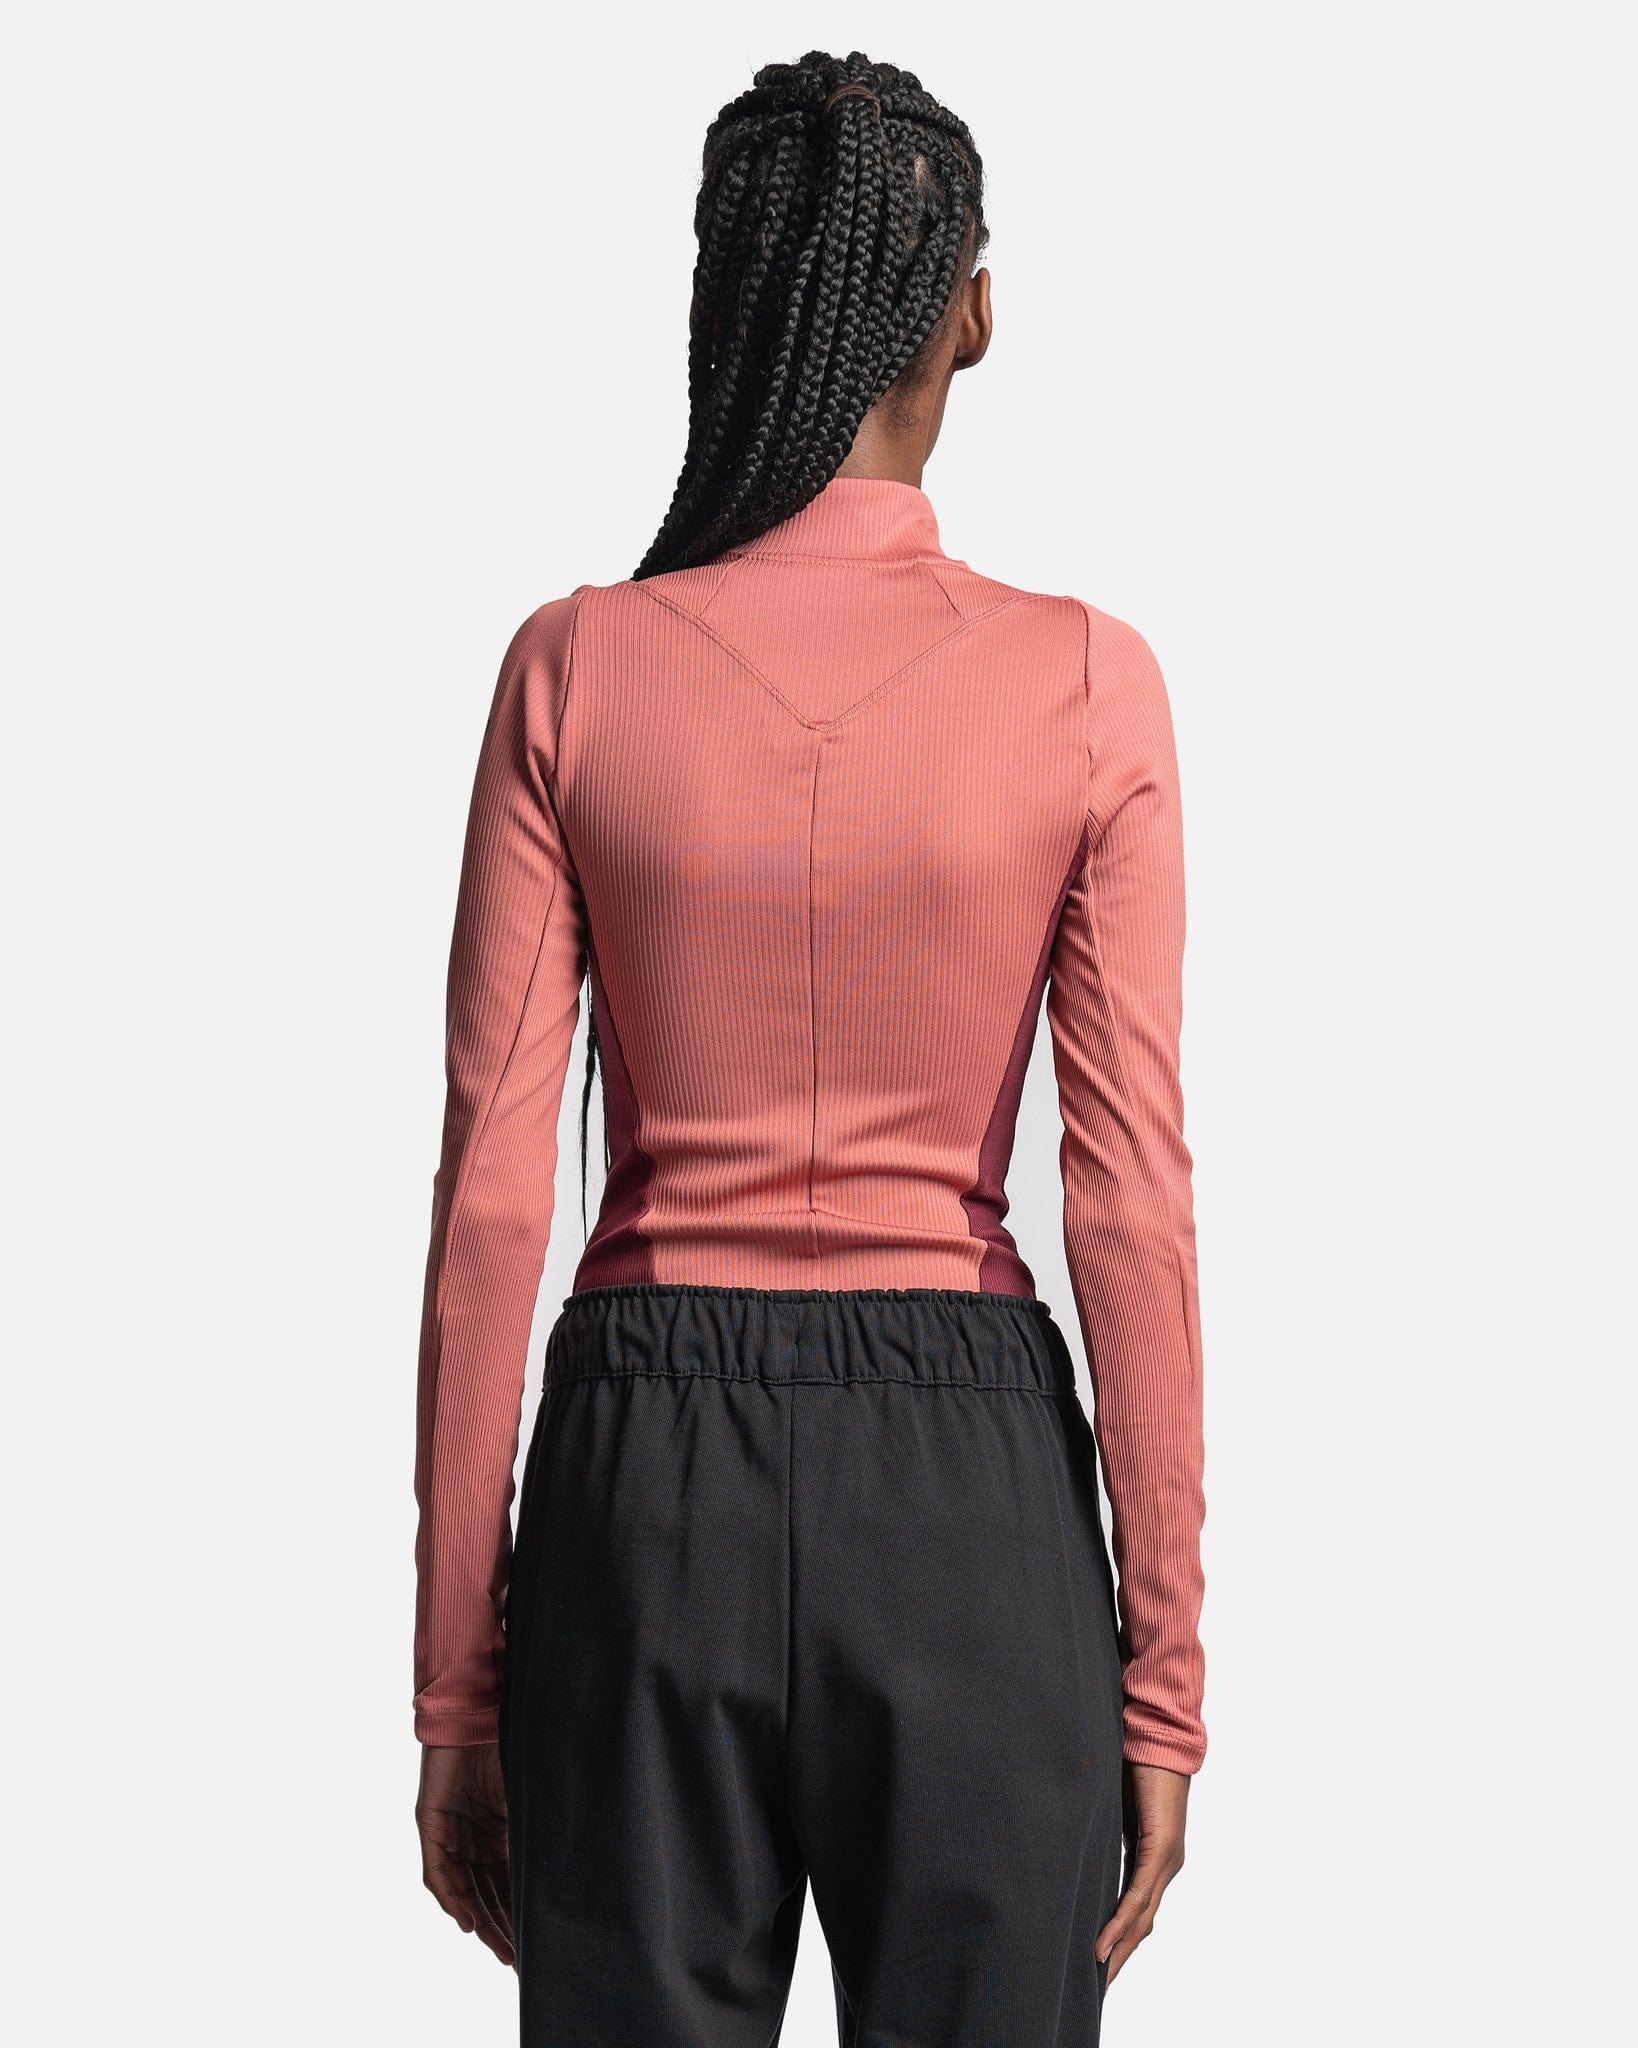 Jordan Women Tops Women's 23 Engineered 1/4-Zip Long-Sleeve Top in Canyon Pink